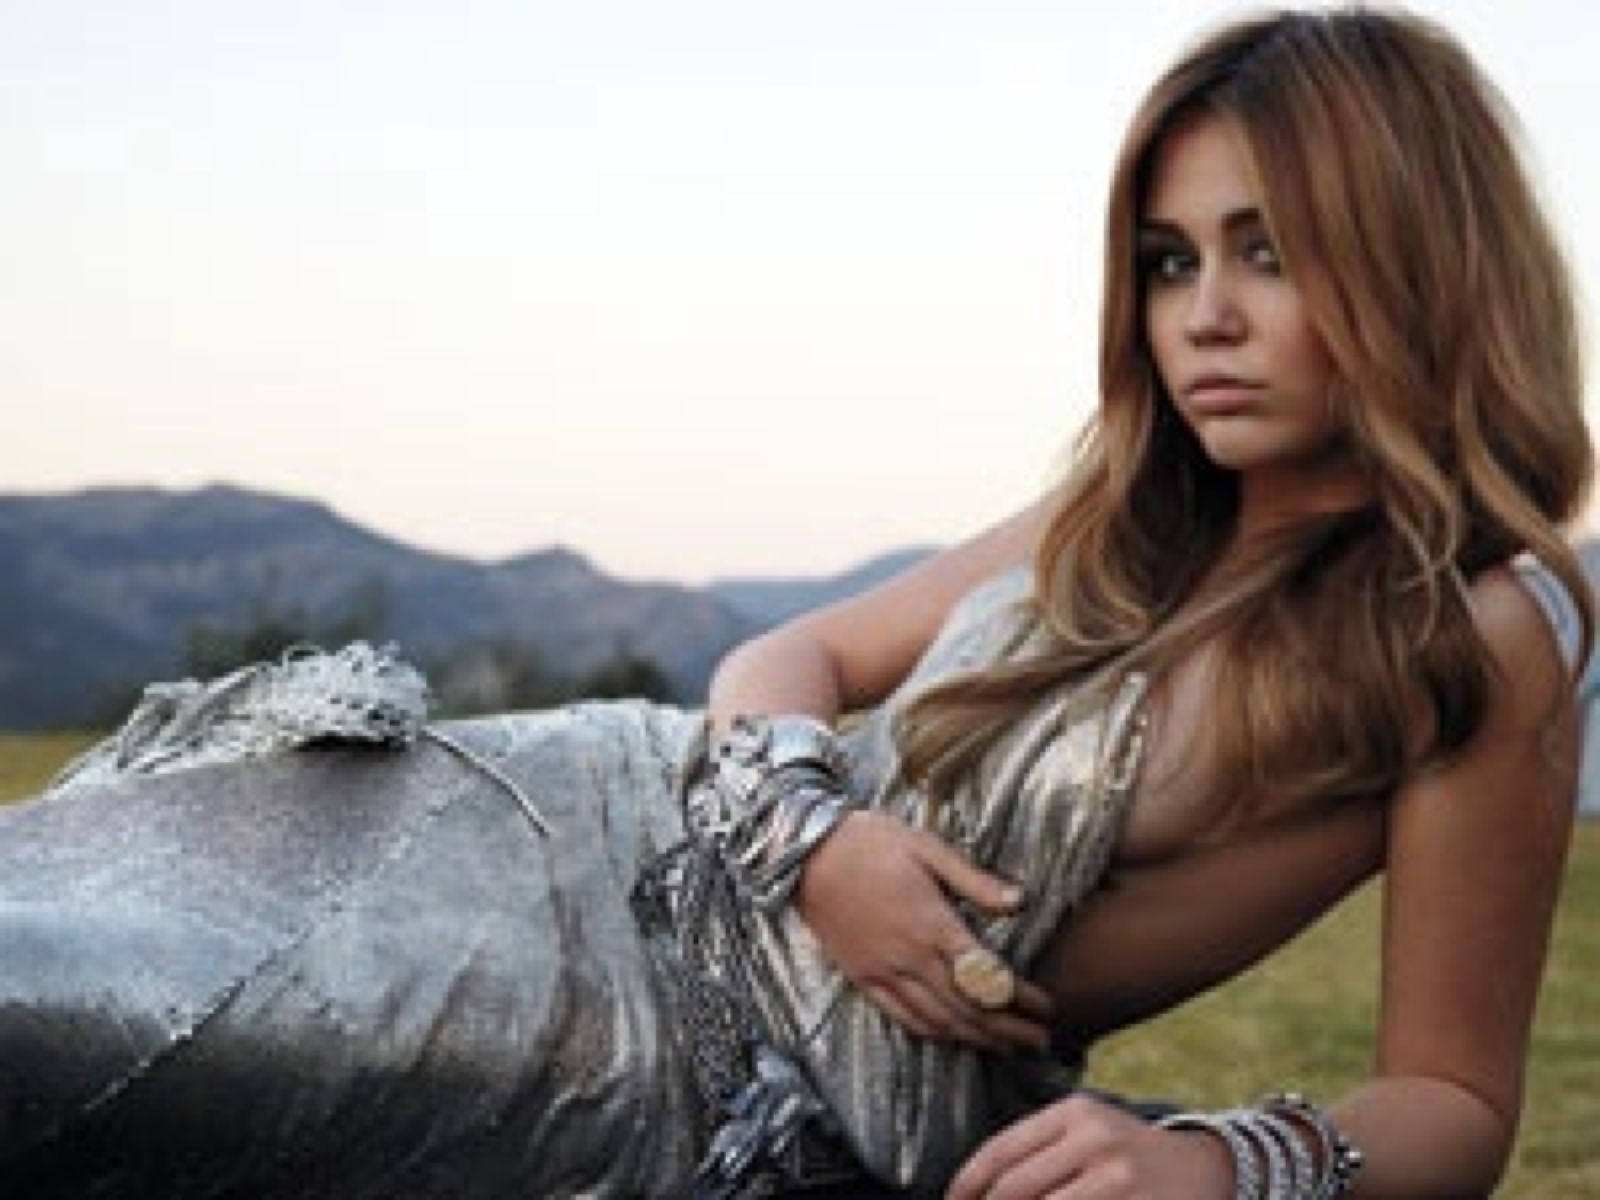 Miley Cyrus 3